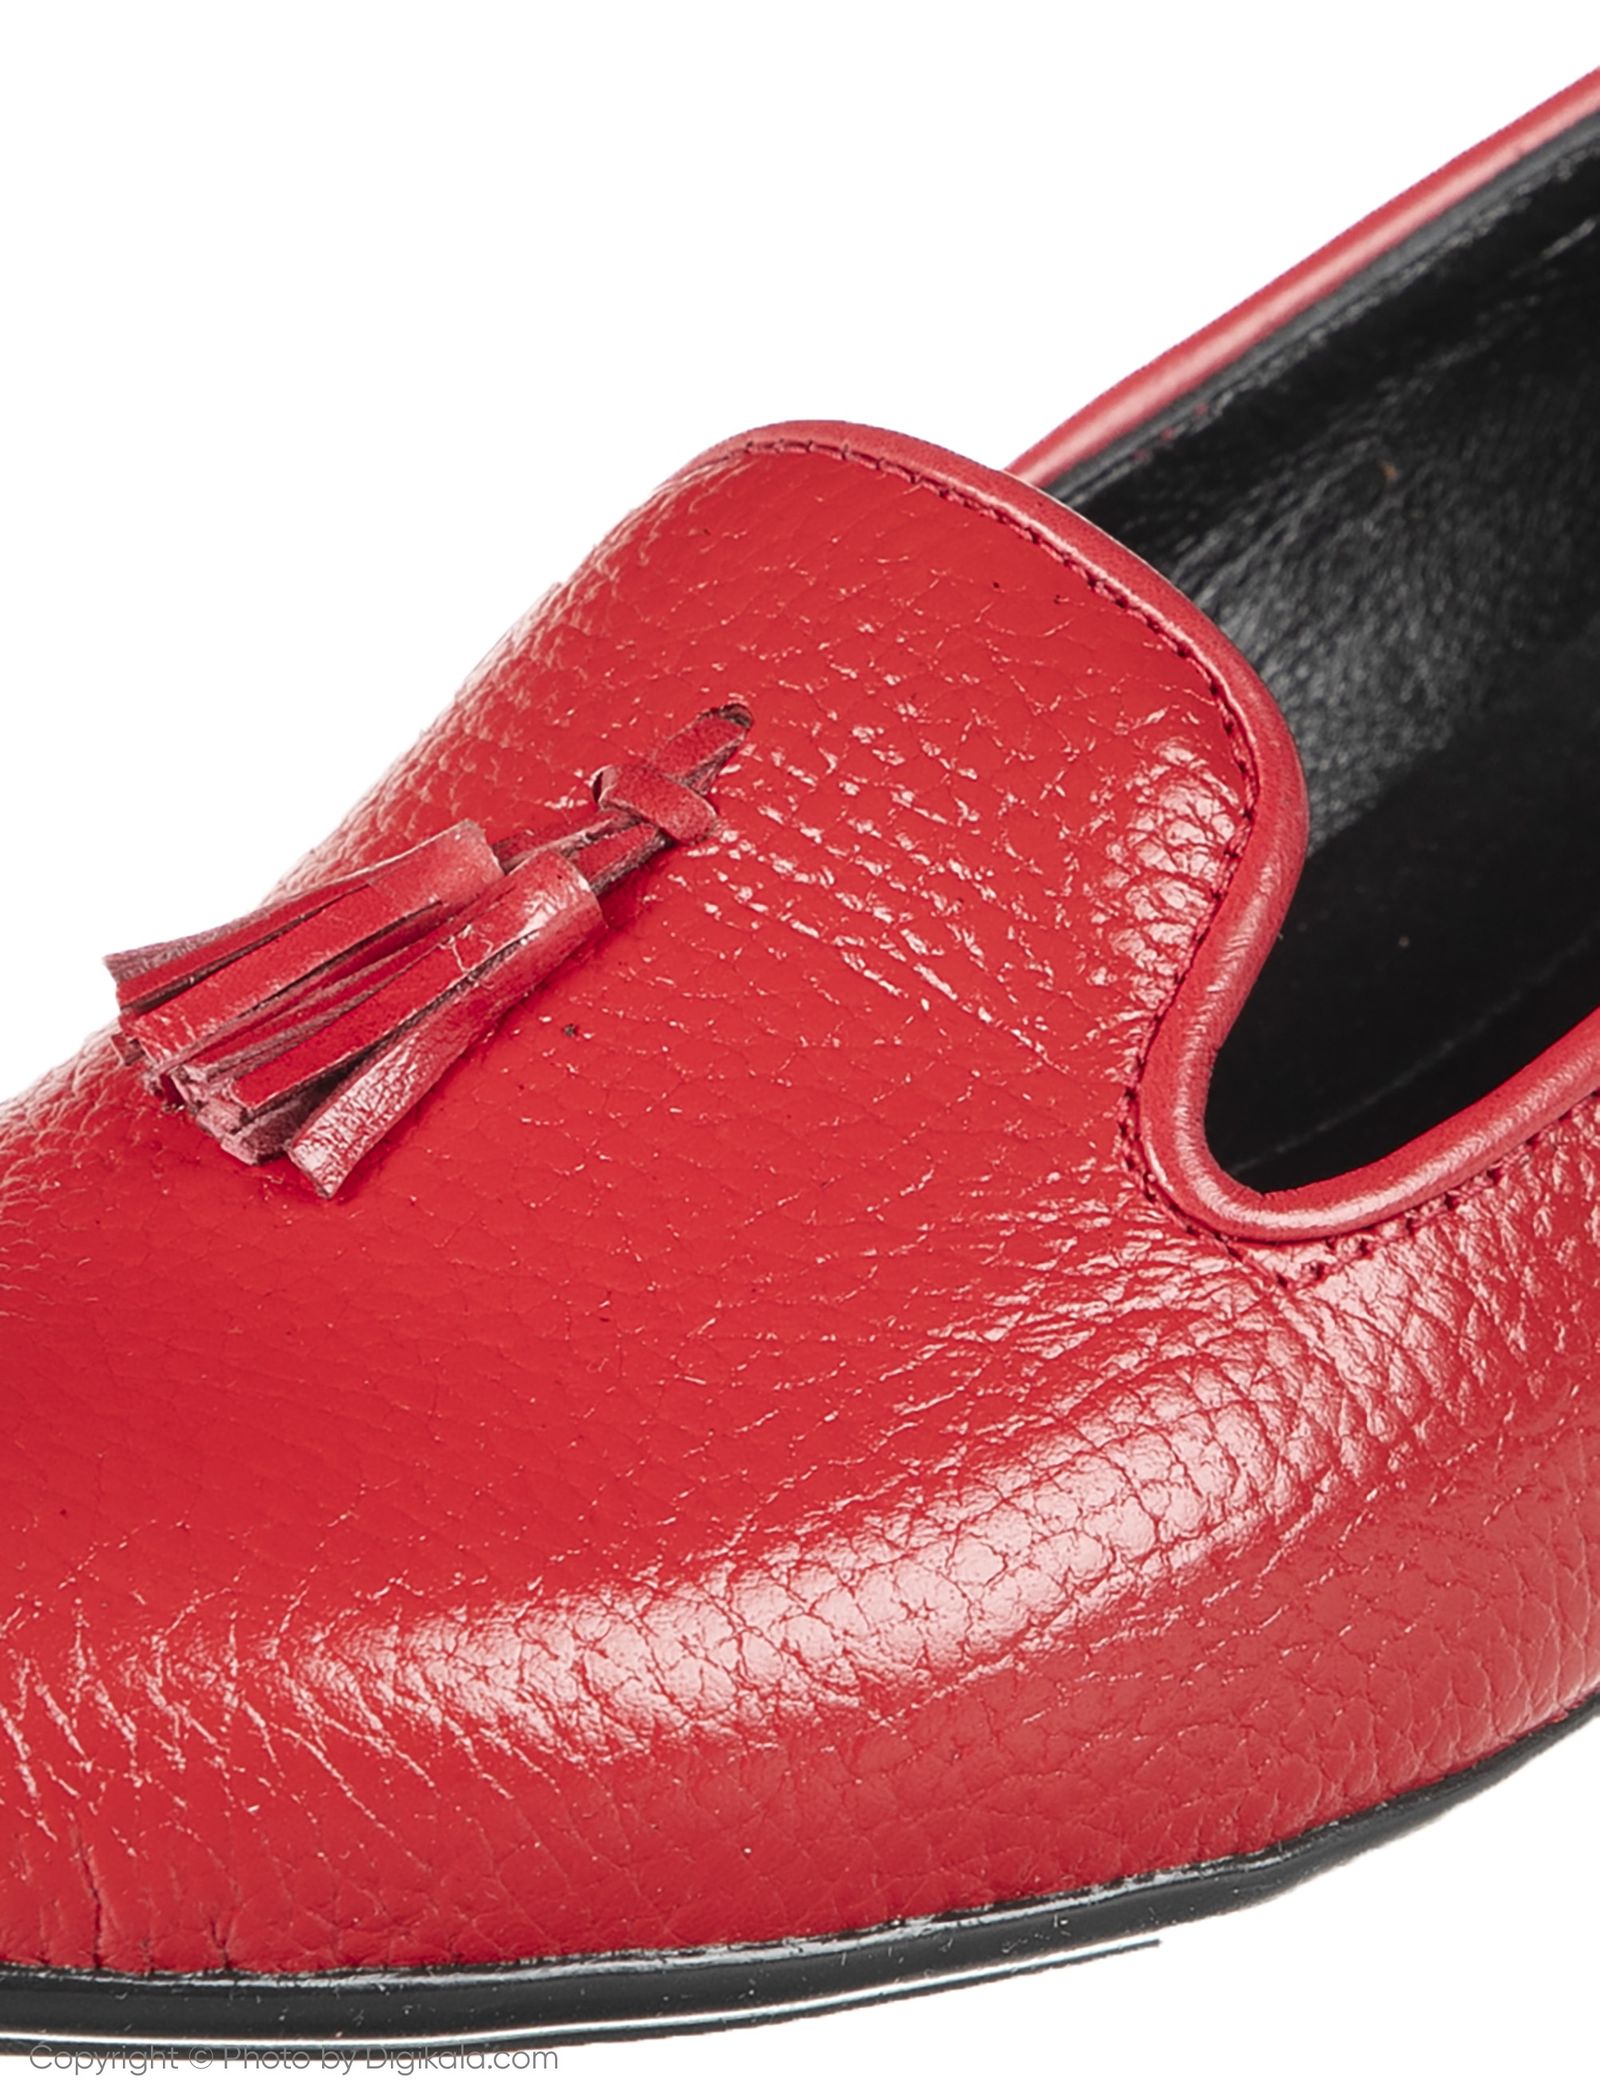 کفش زنانه دلفارد مدل 5183A500-102 - قرمز - 7